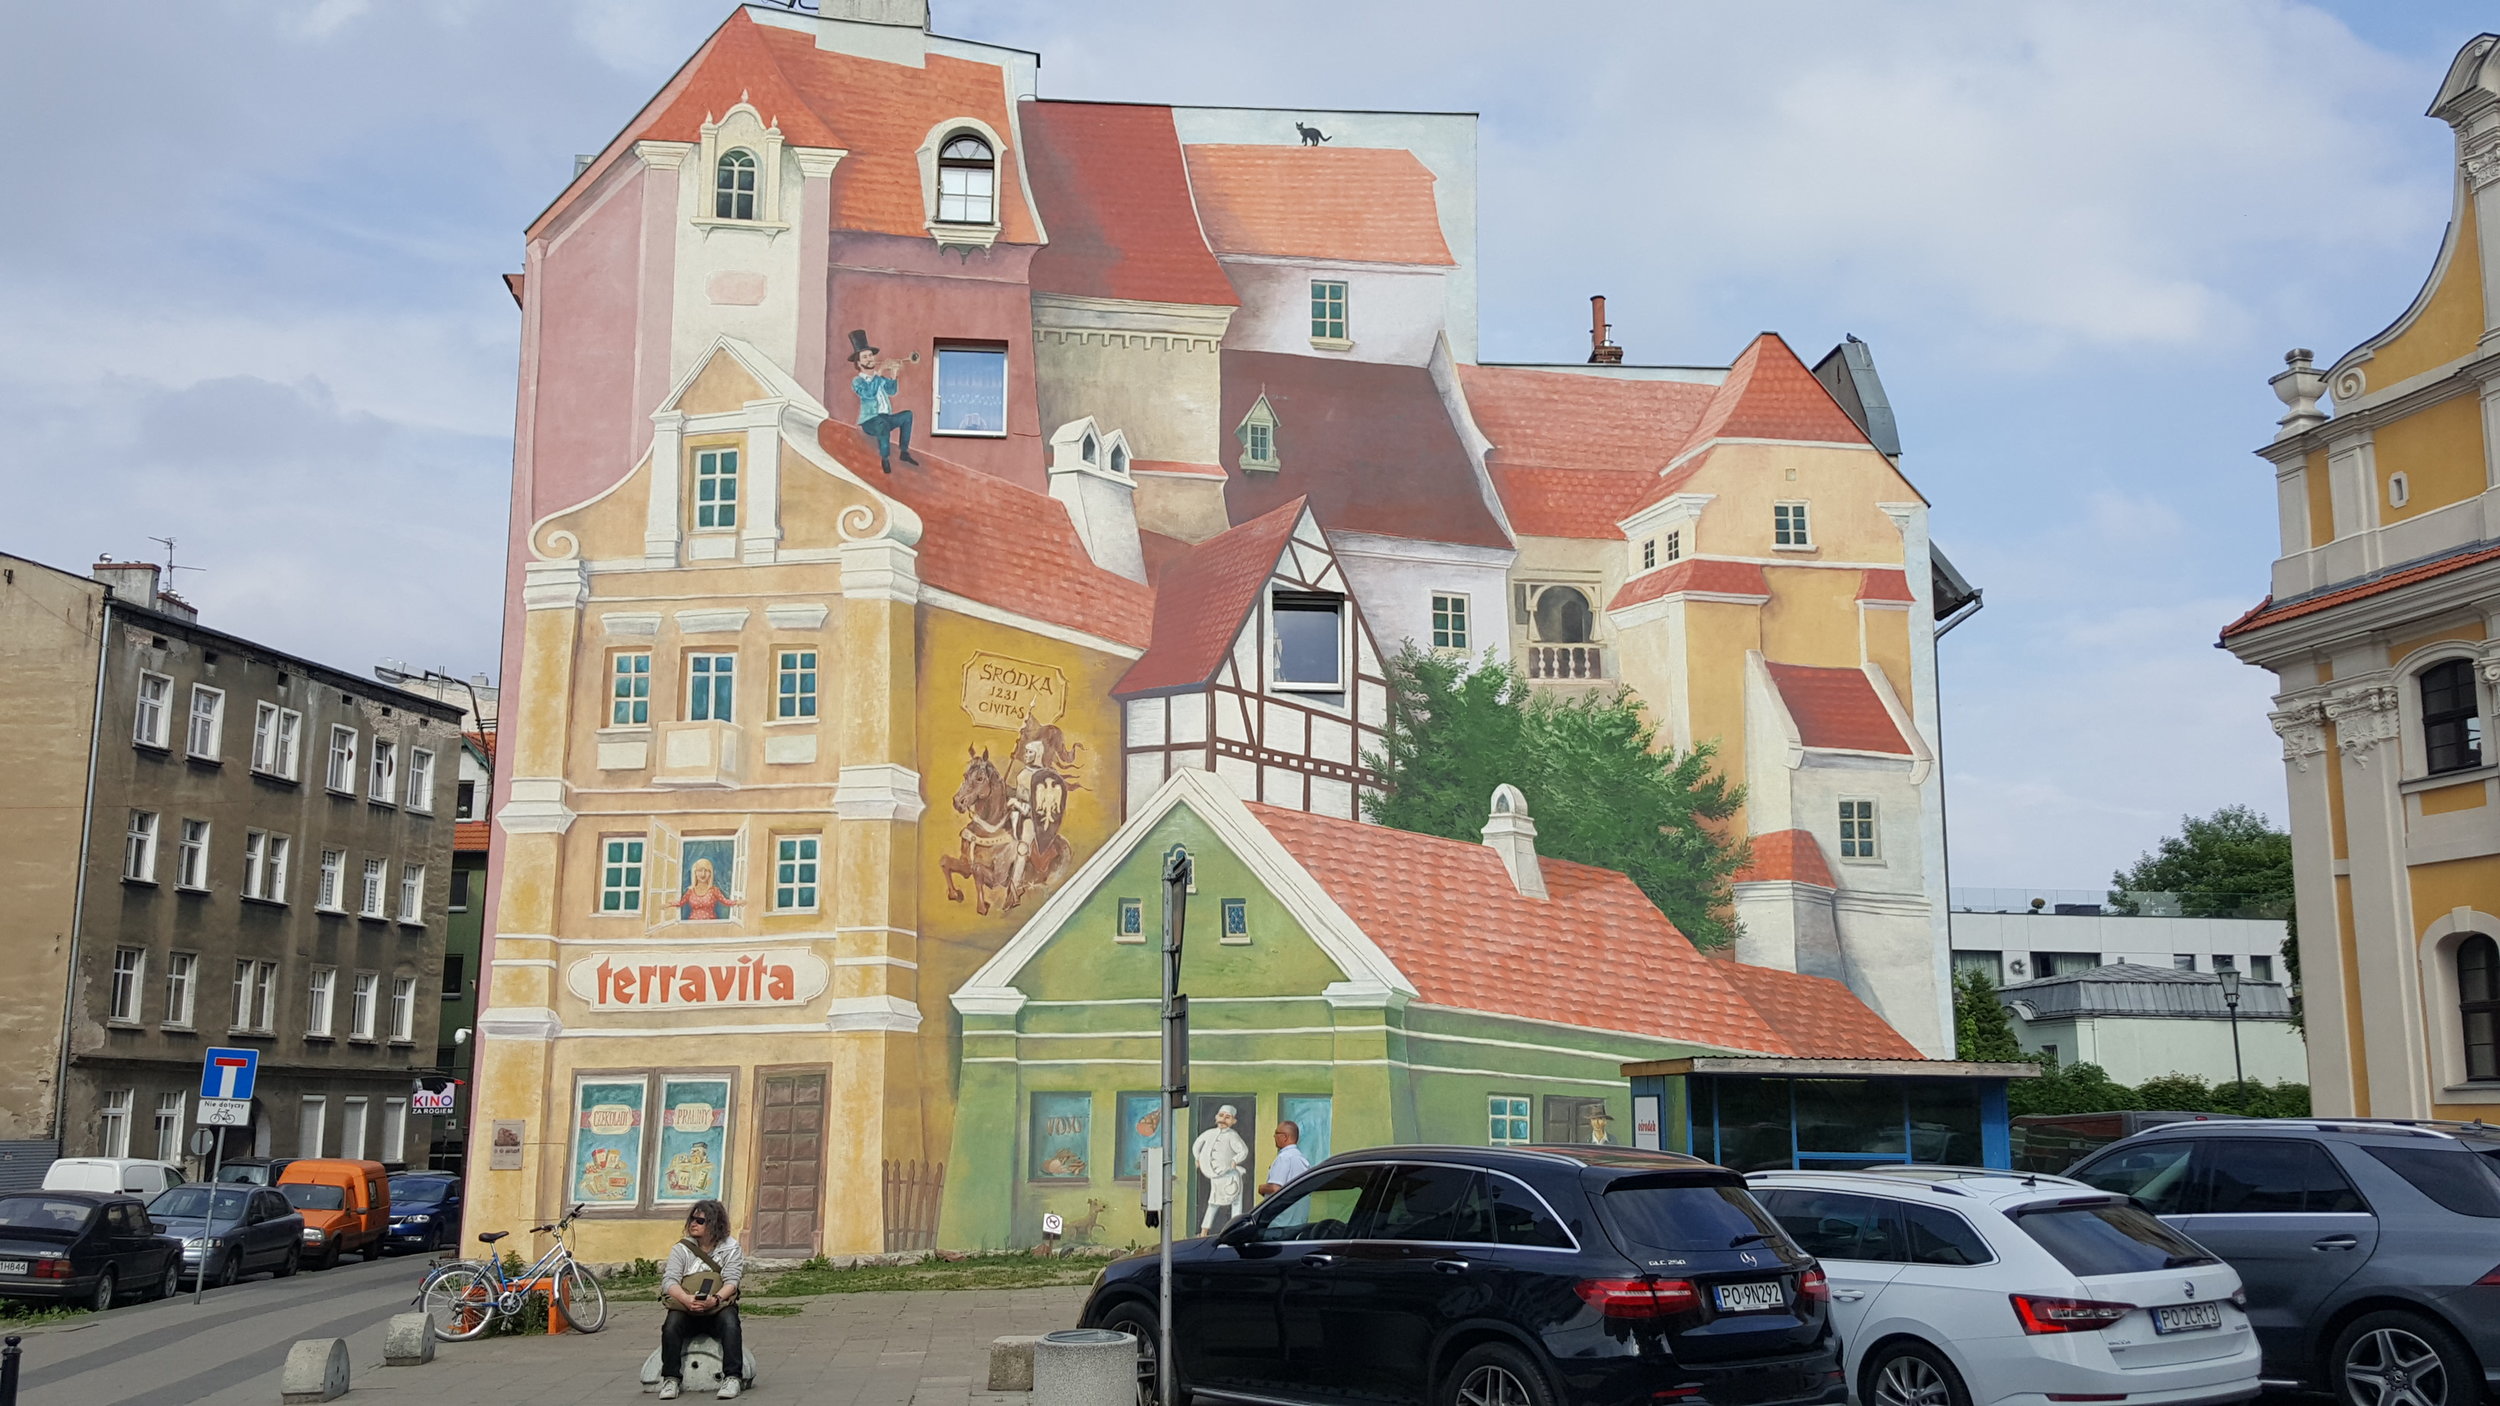 Poznan Mural.jpg